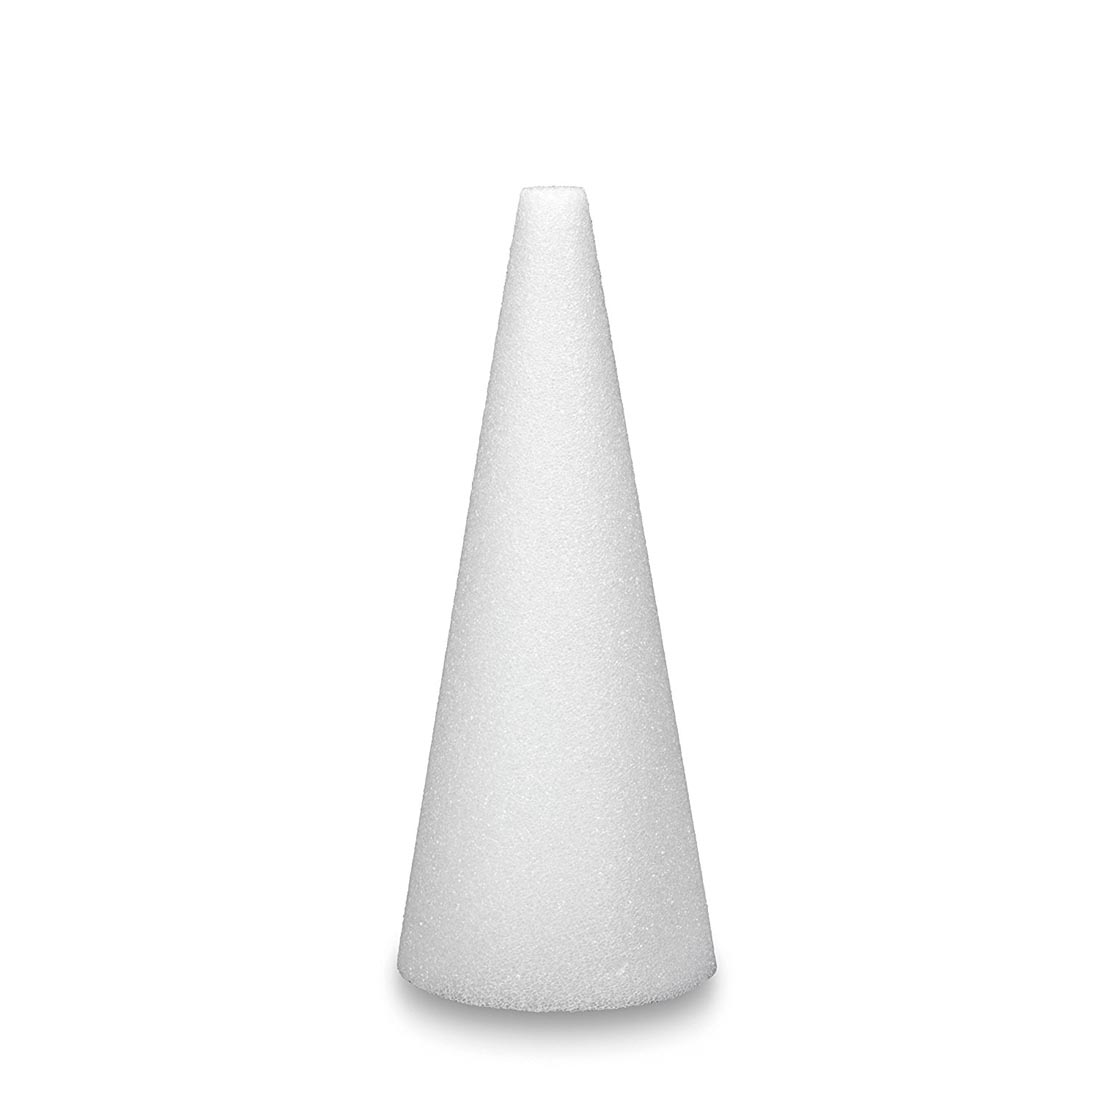 White Styrofoam Cone